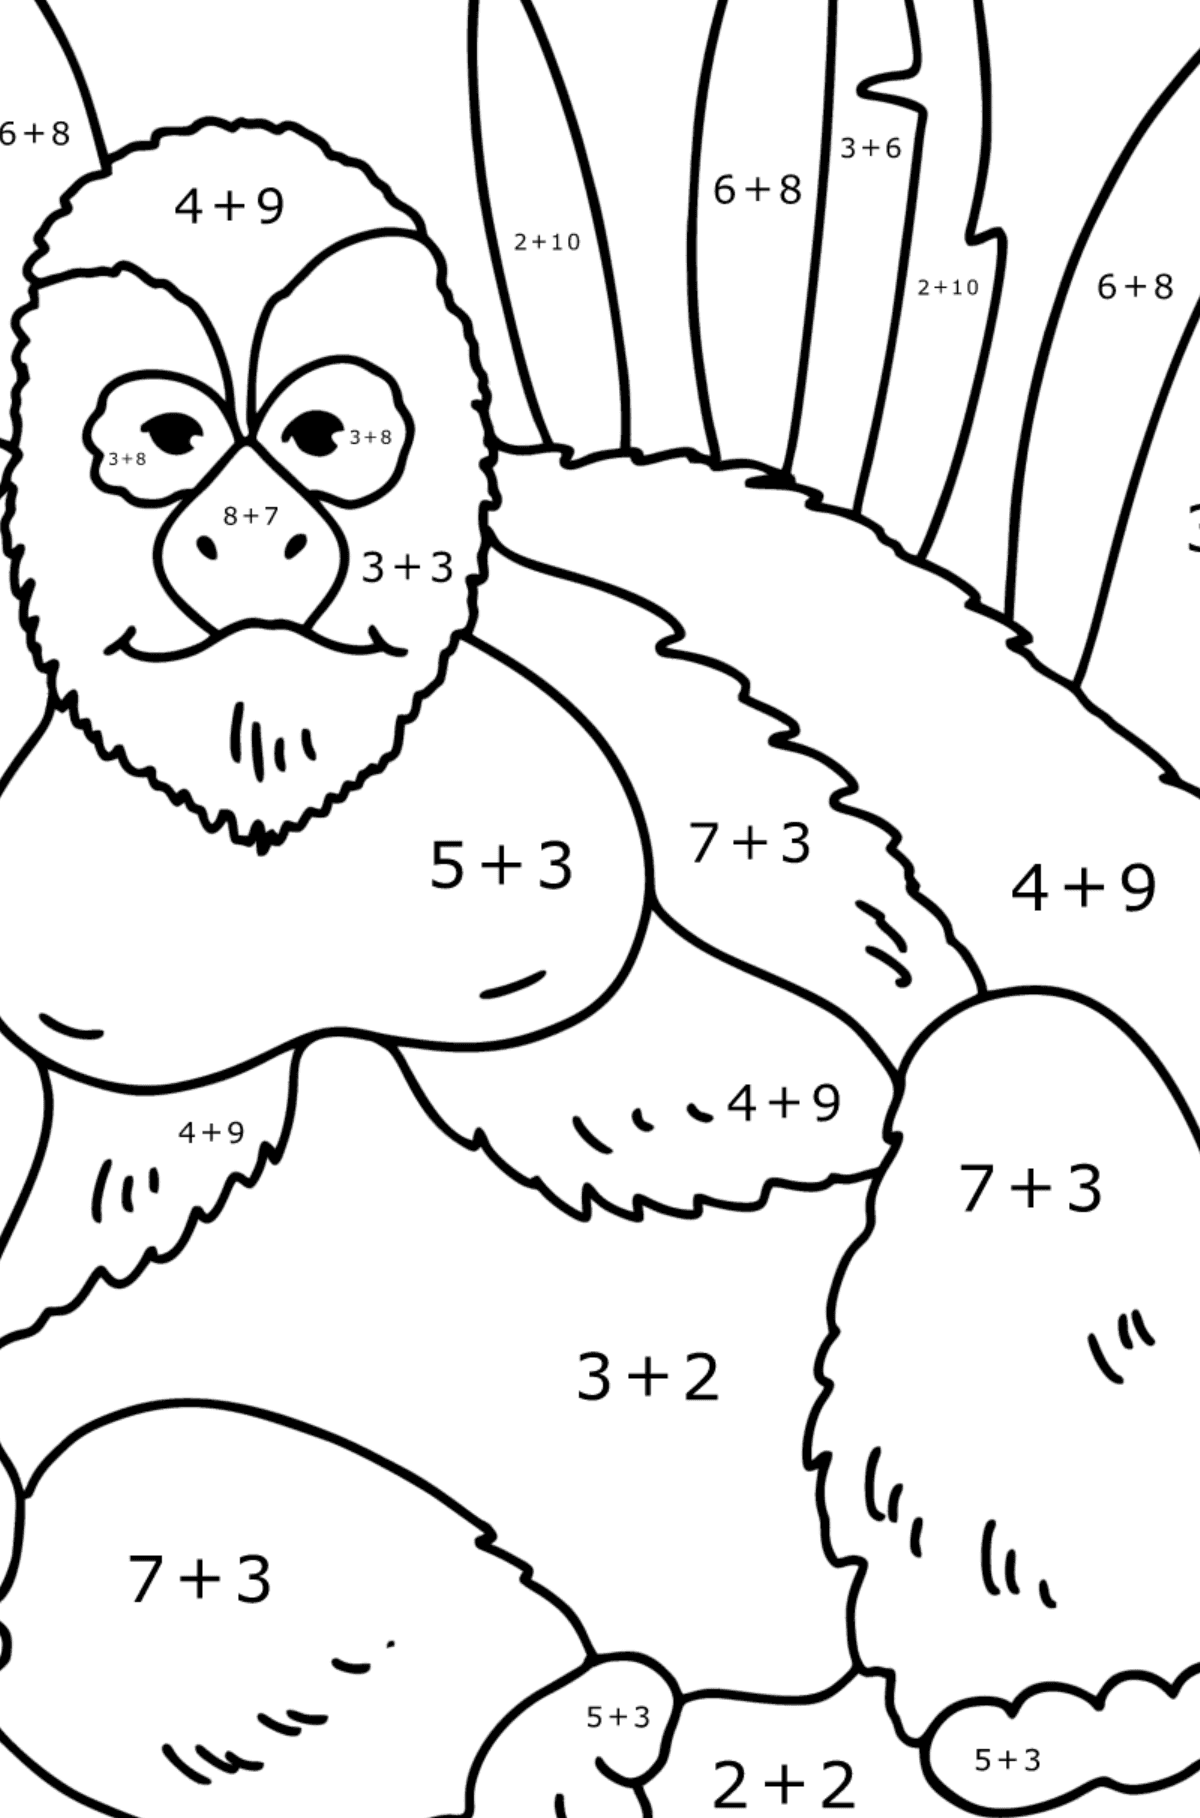 Gorilla kleurplaat - Wiskunde kleurplaten - optellen voor kinderen